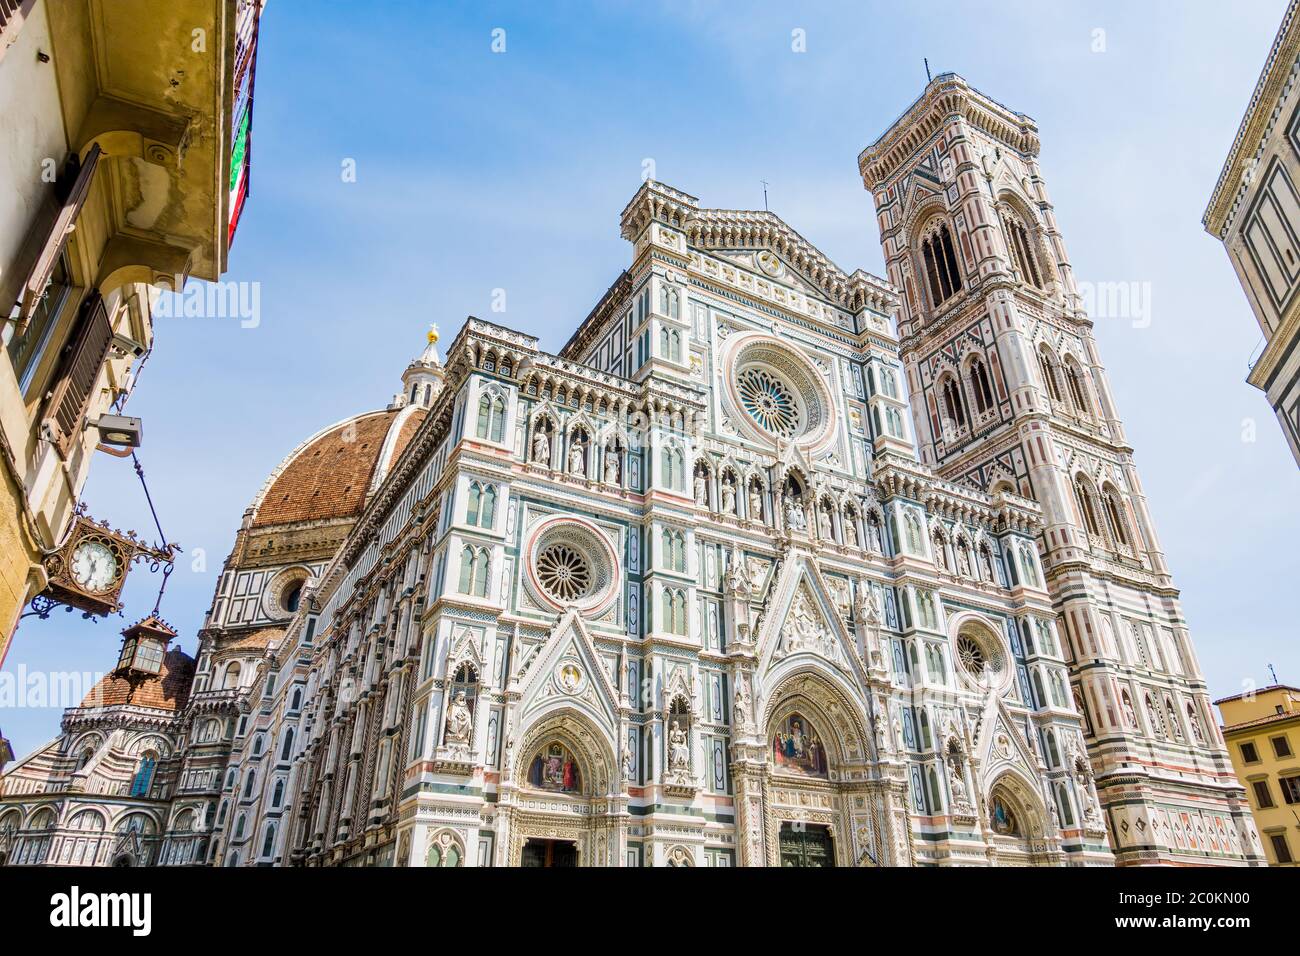 Piazza del Duomo, place de la cathédrale dans le centre historique de Florence Toscane Italie Banque D'Images